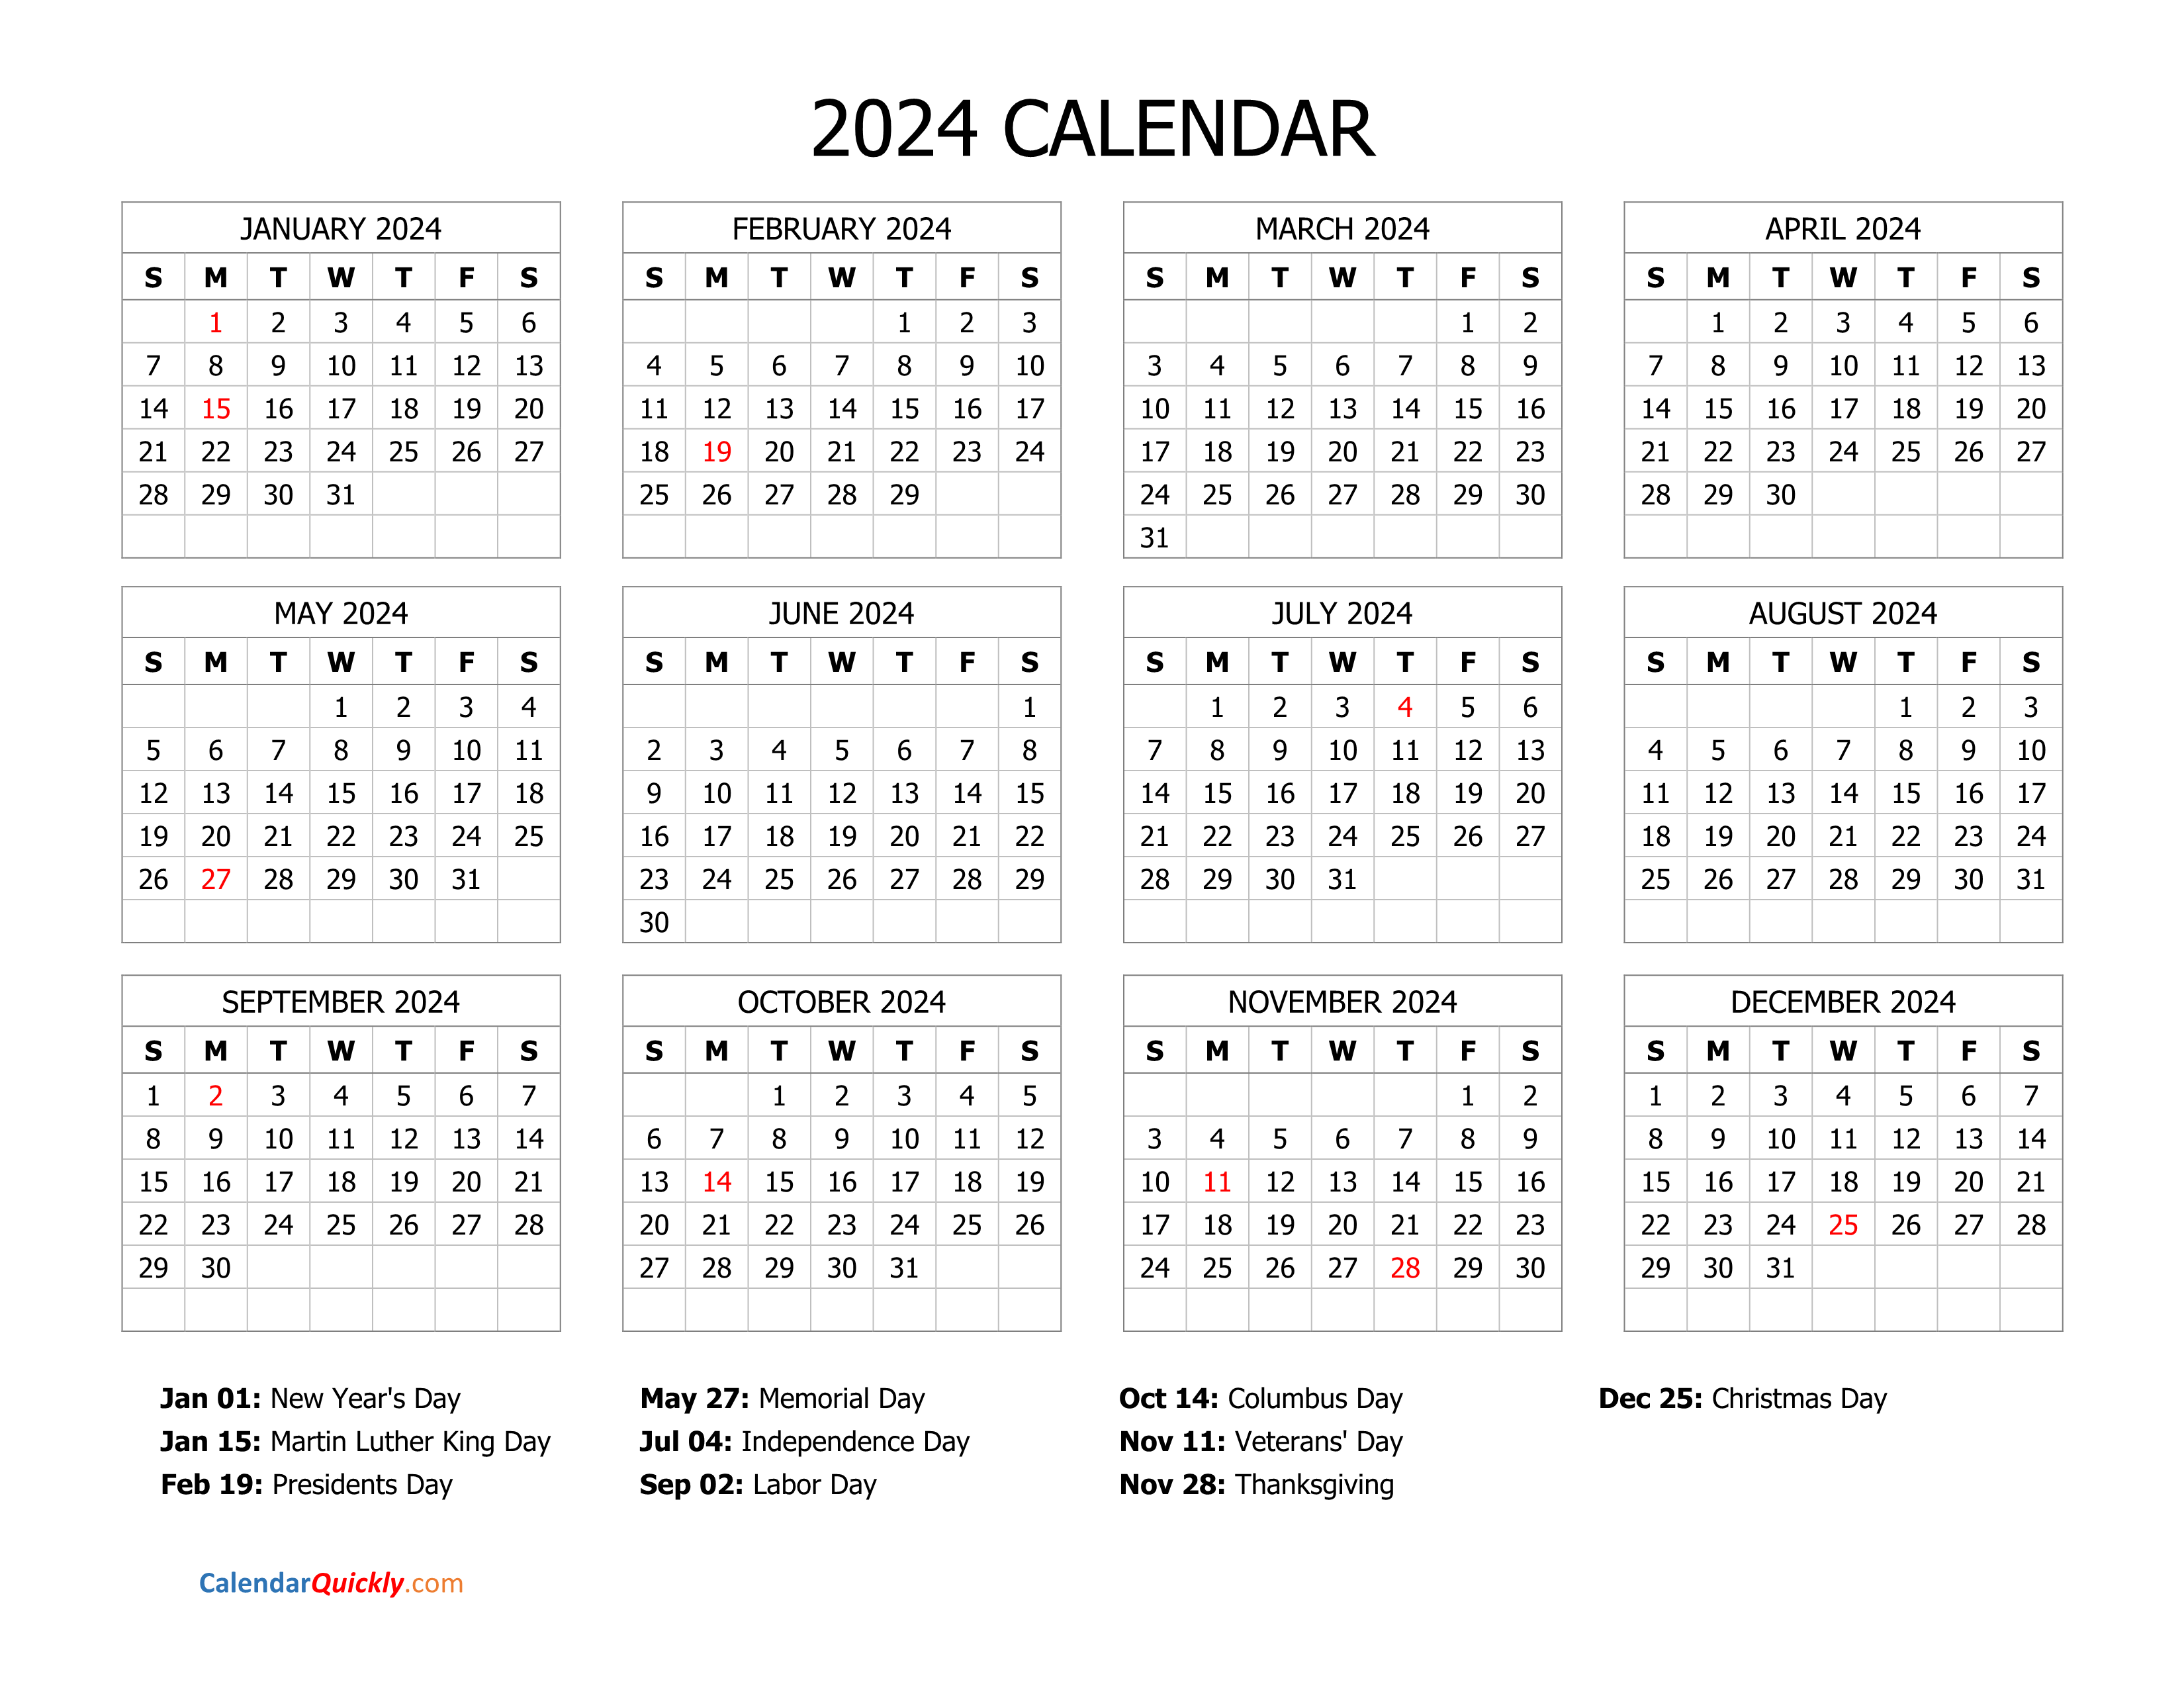 2024 Calendar Free Printable - Free Printable 2024 Calendar With Holidays Bangladesh